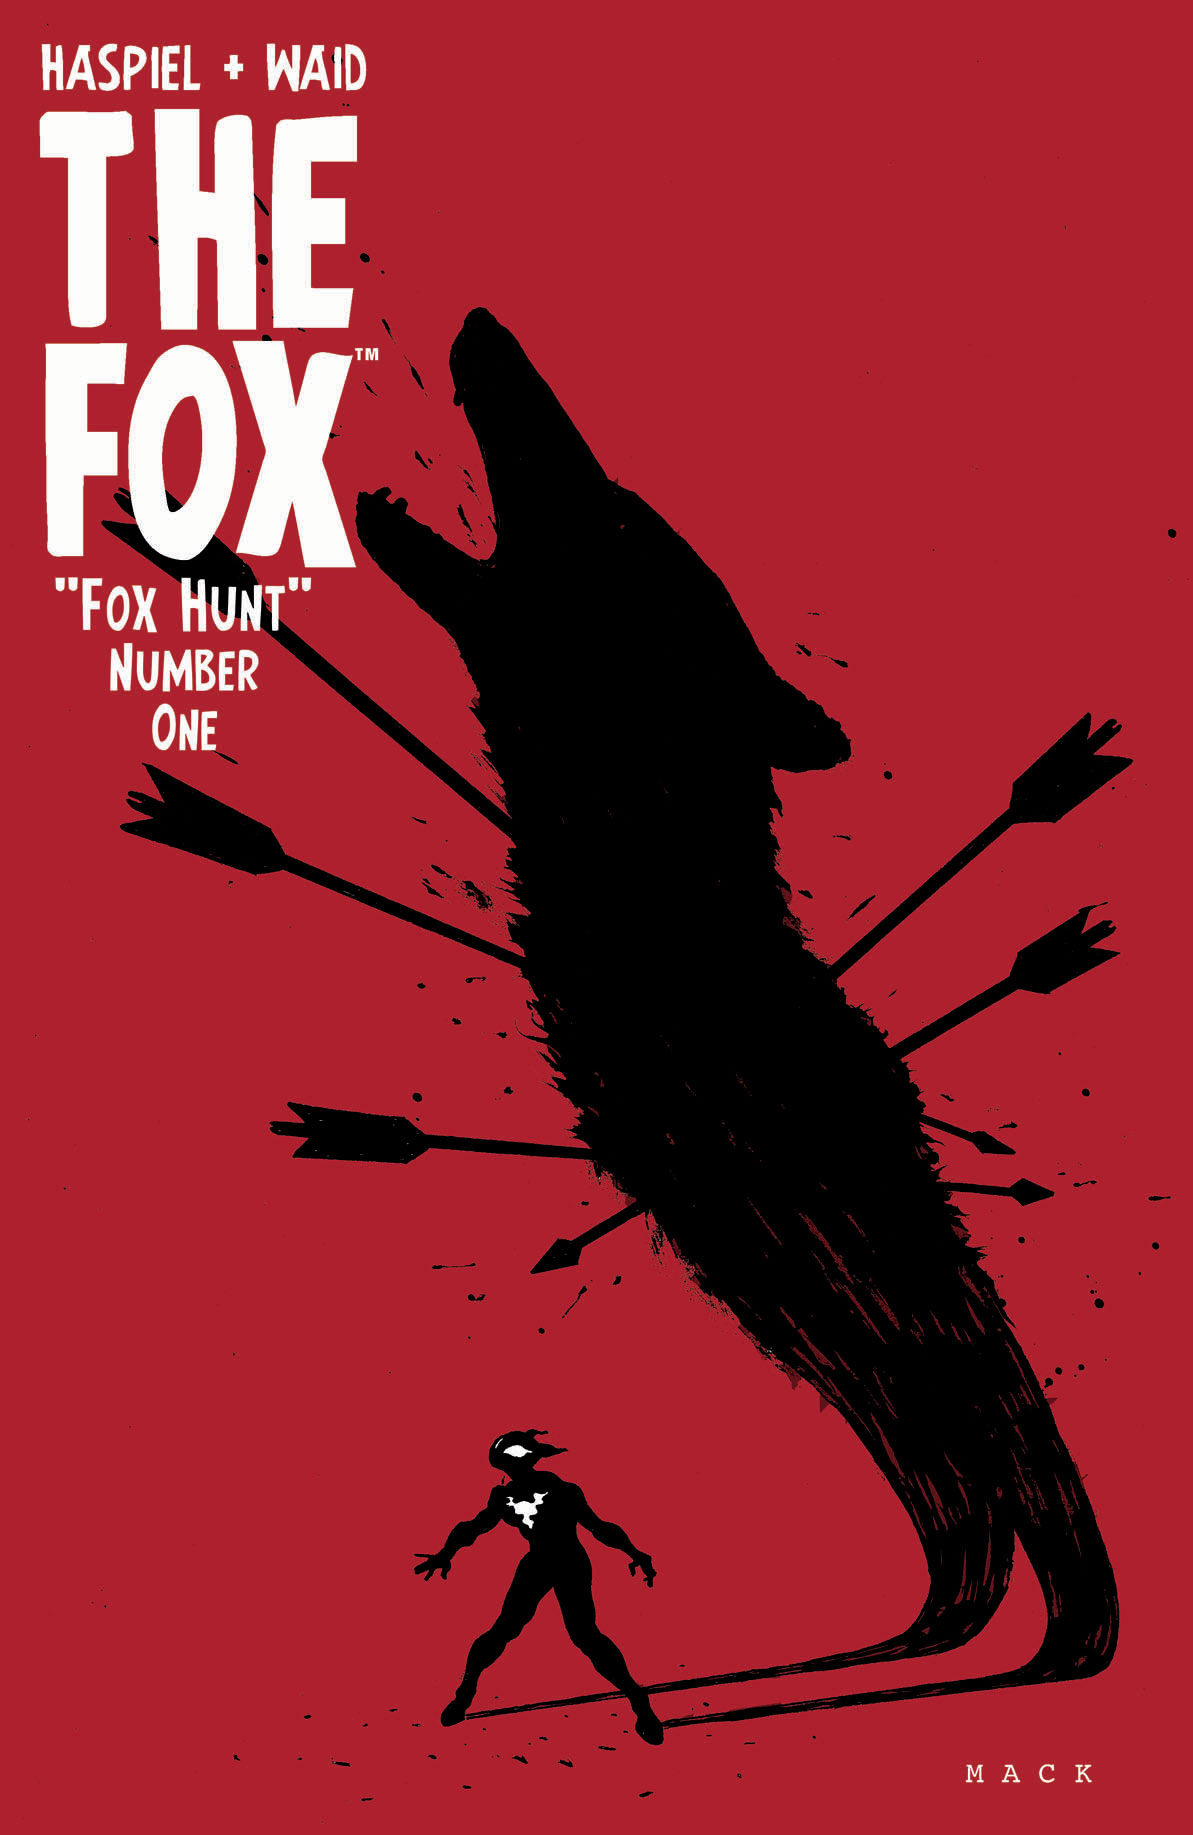 THE FOX #1